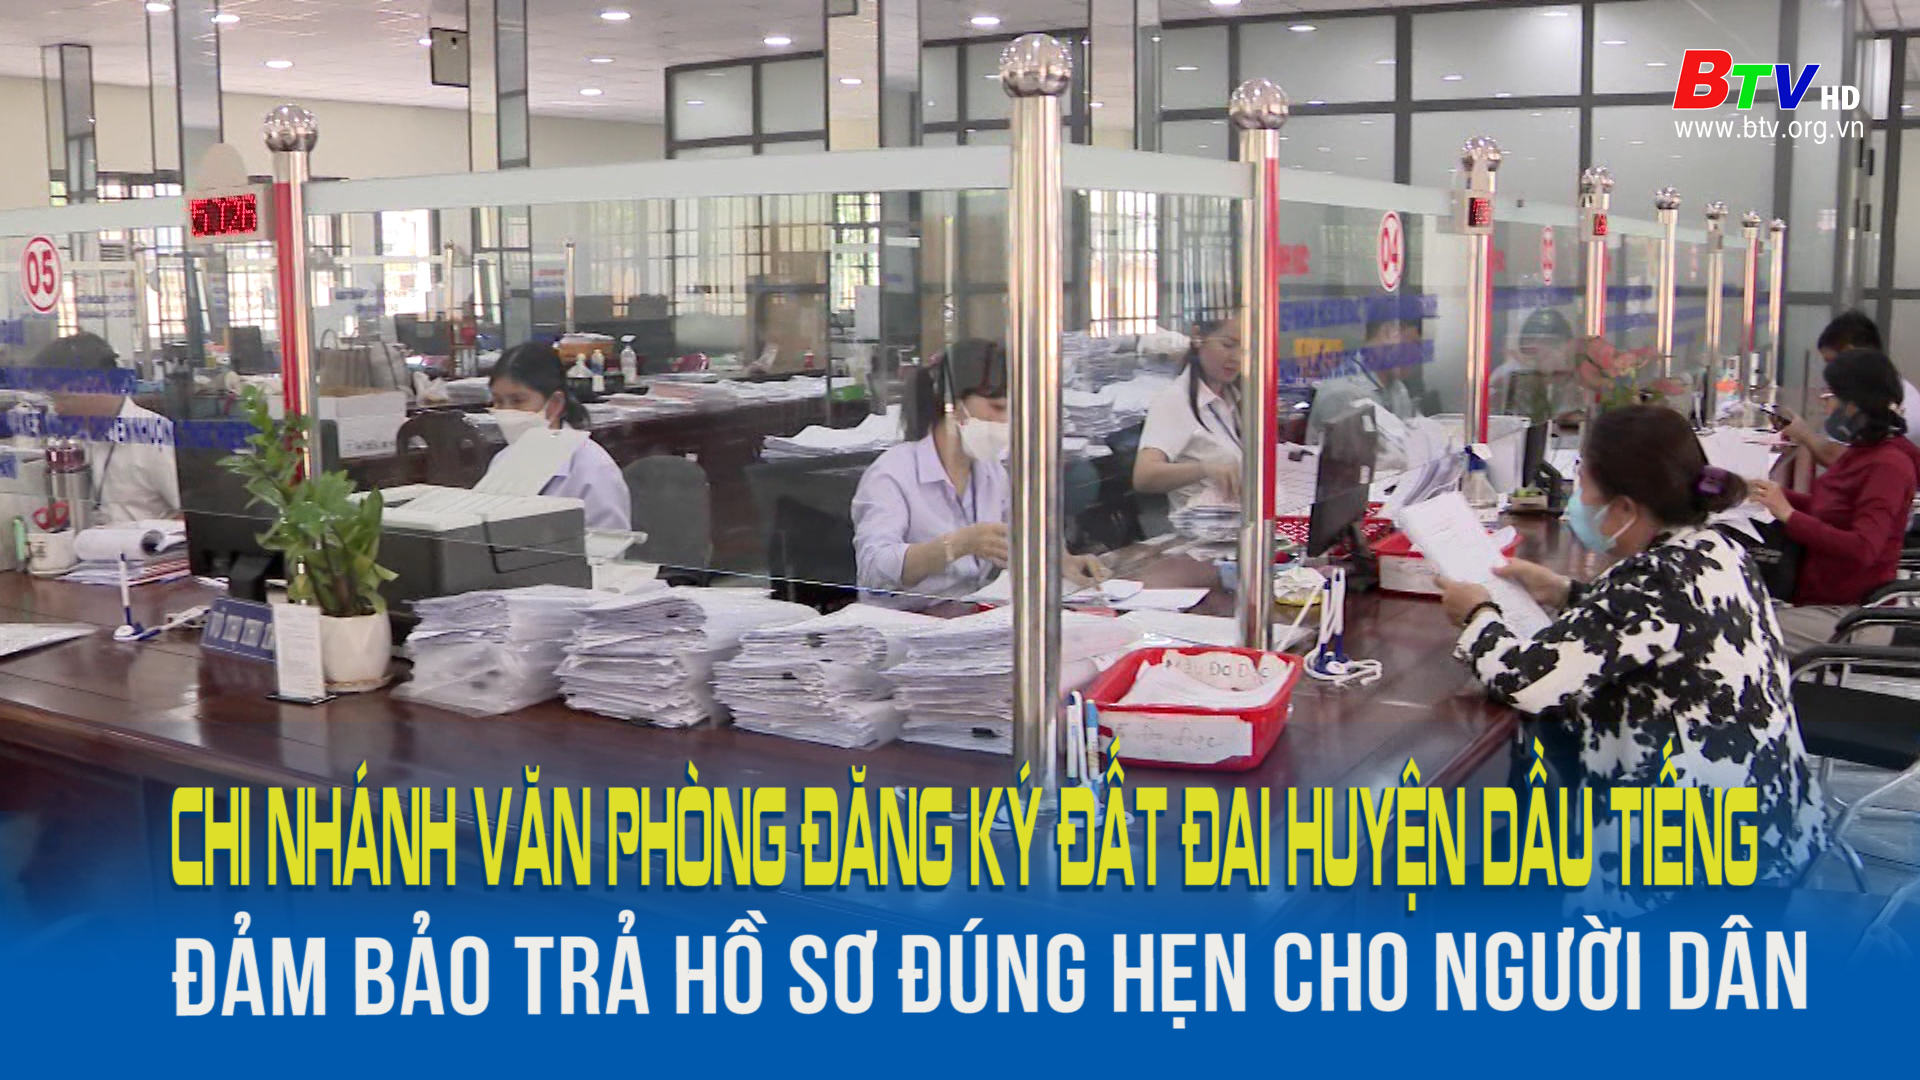 Chi nhánh văn phòng đăng ký đất đai huyện Dầu Tiếng đảm bảo trả hồ sơ đúng hẹn cho người dân